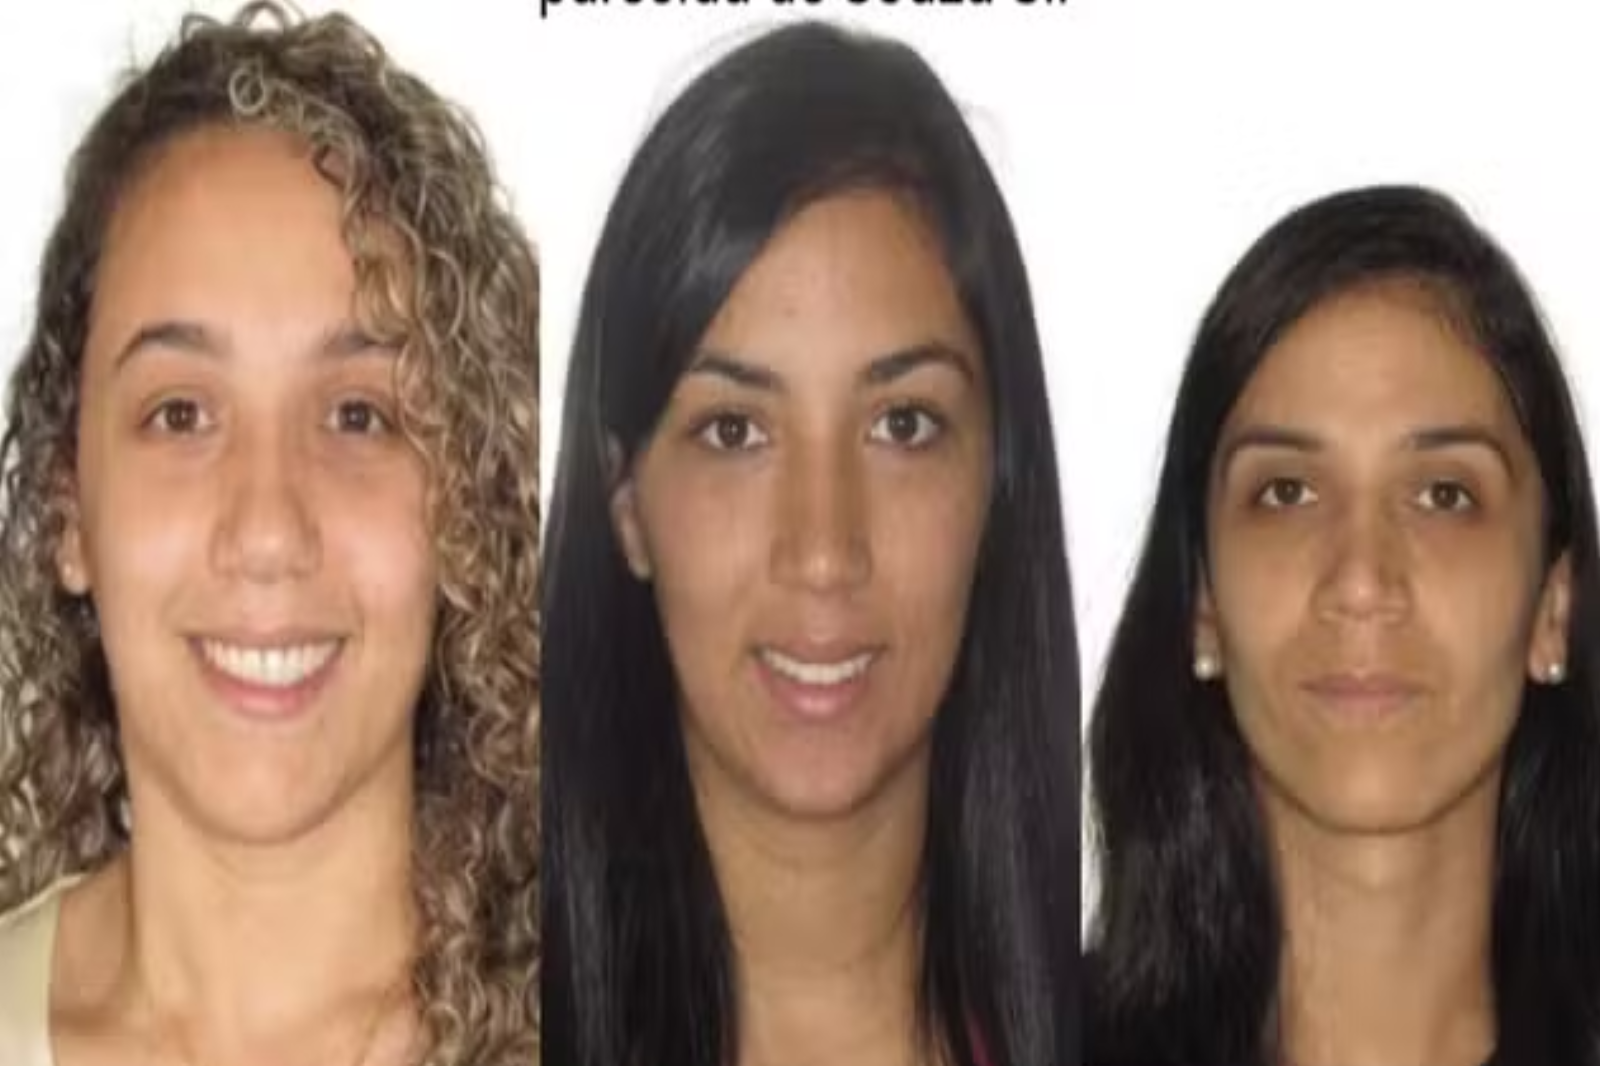 Polícia prende mulher que viajava o Brasil furtando shoppings com as irmãs; outras duas estão foragidas